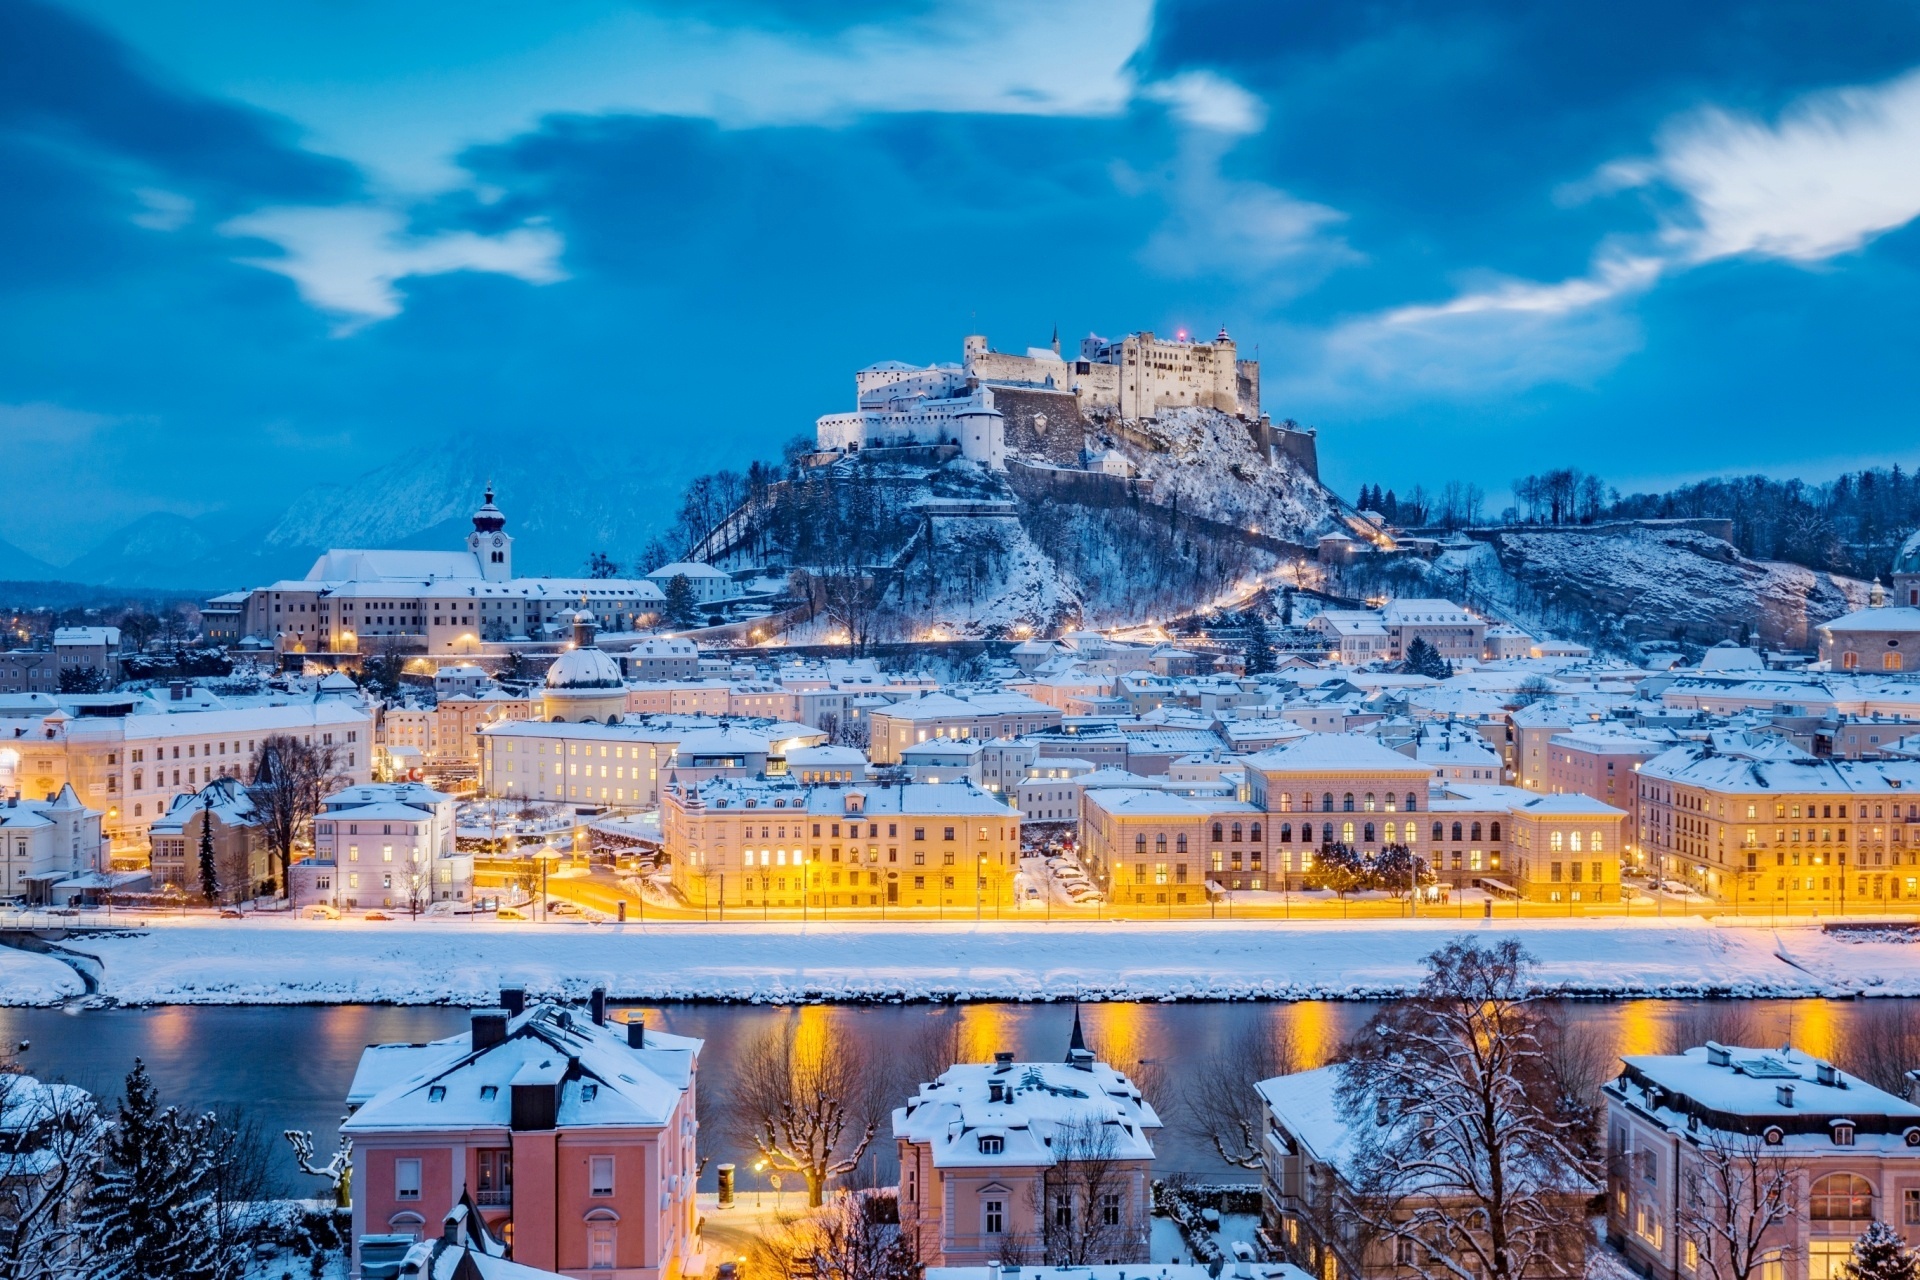 ホーエンザルツブルク城とザルツァハ川 クリスマスの時期のザルツブルクの町並み オーストリアの風景 Beautiful Photo Net